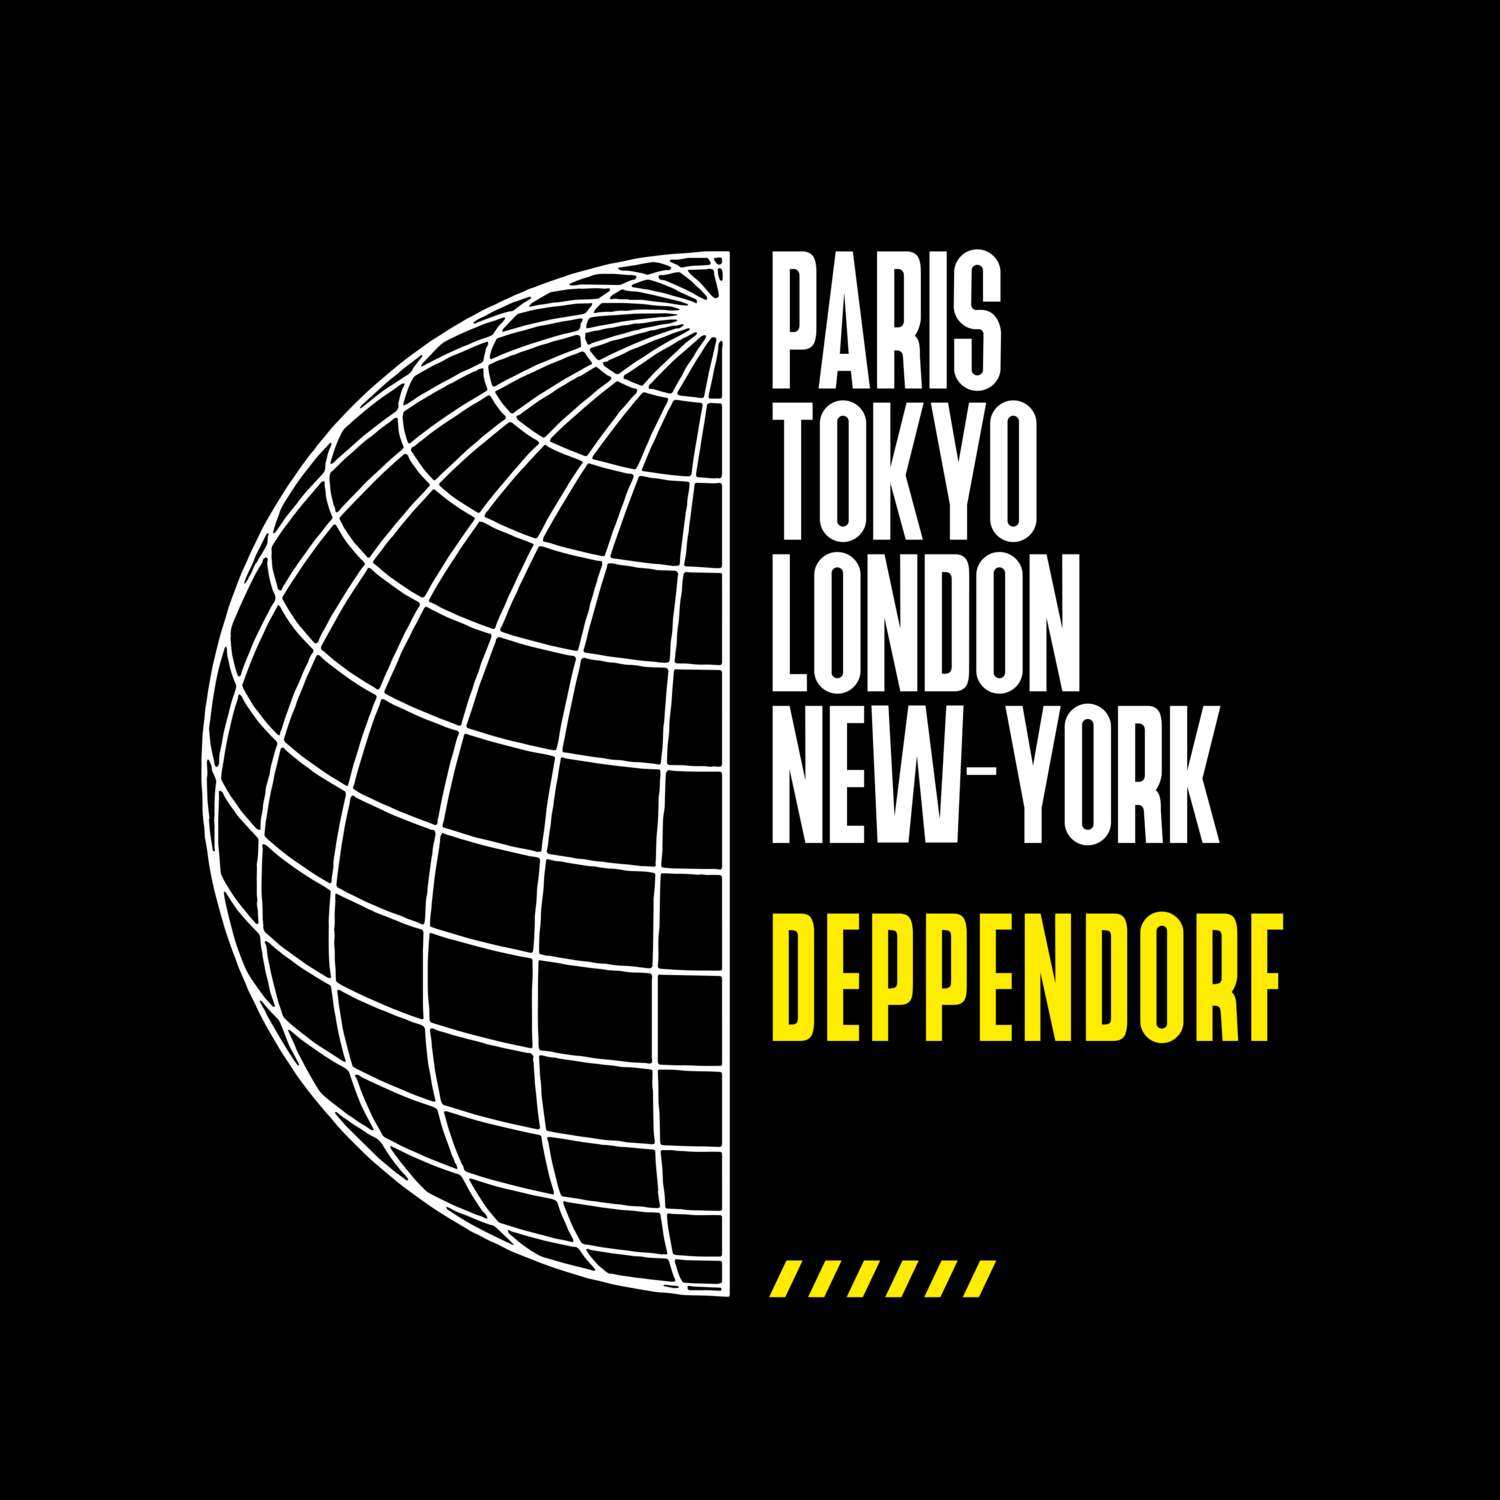 Deppendorf T-Shirt »Paris Tokyo London«